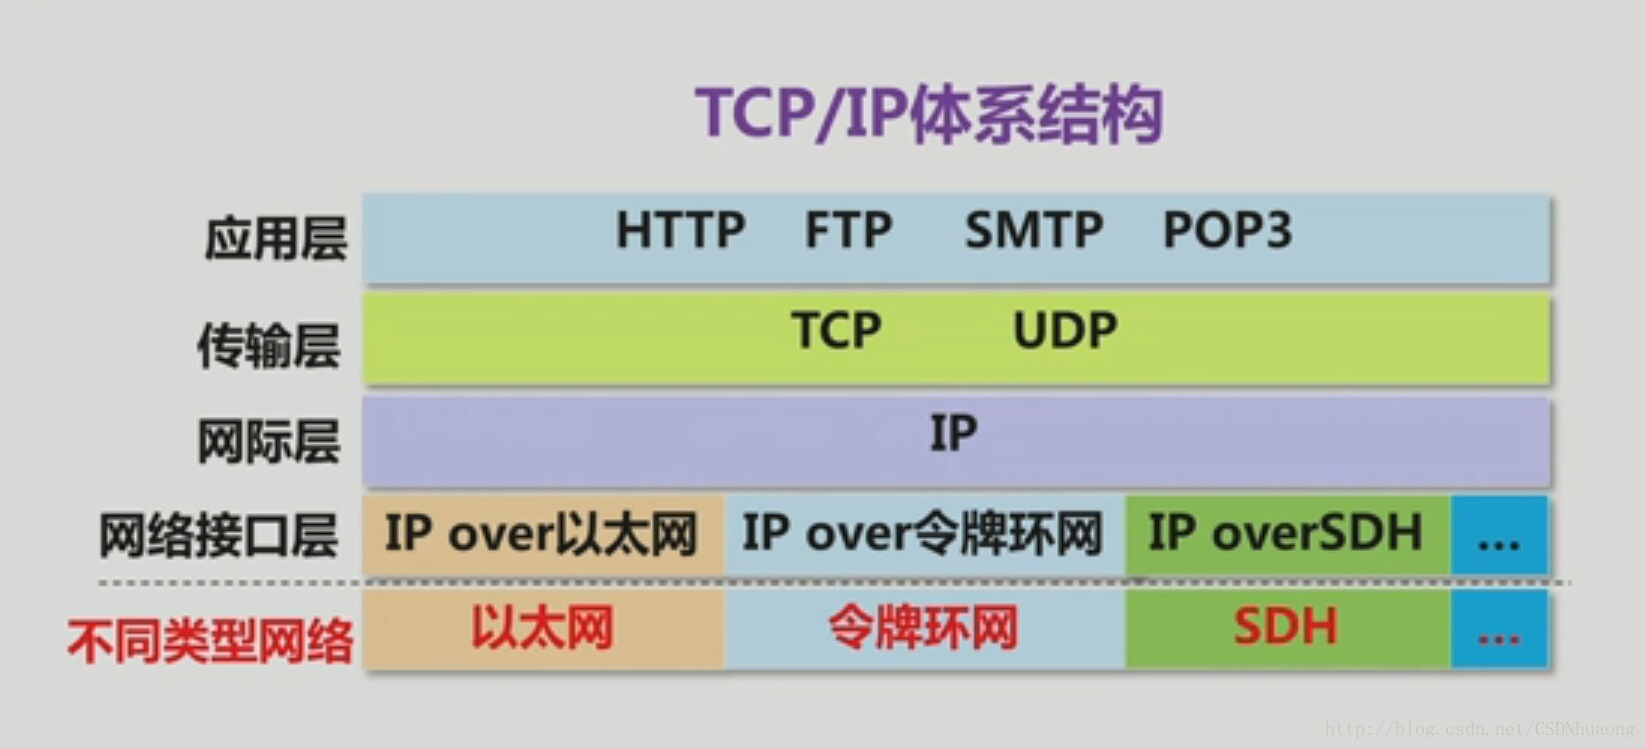 TCP/IP體系結構